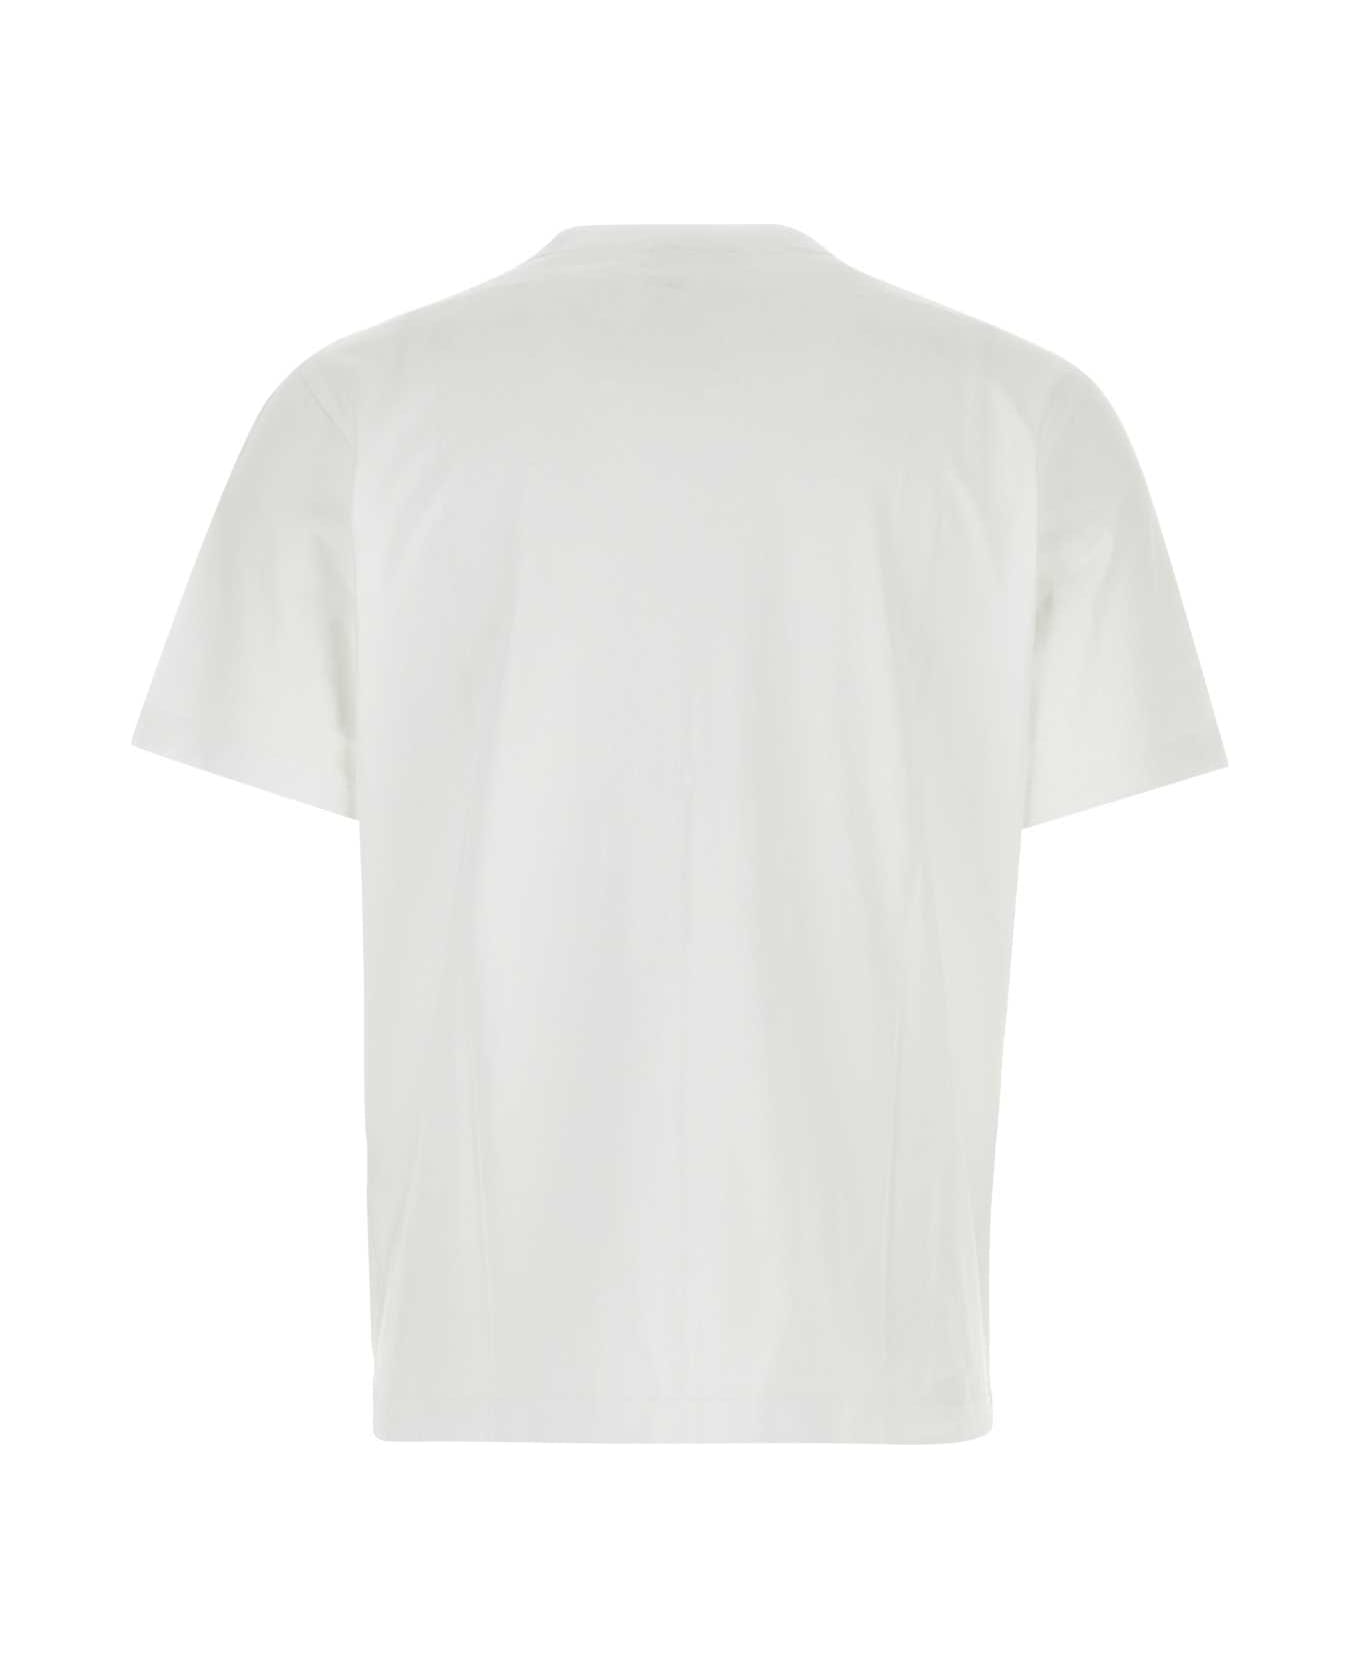 Maison Kitsuné White Cotton T-shirt - WHITEBLACK